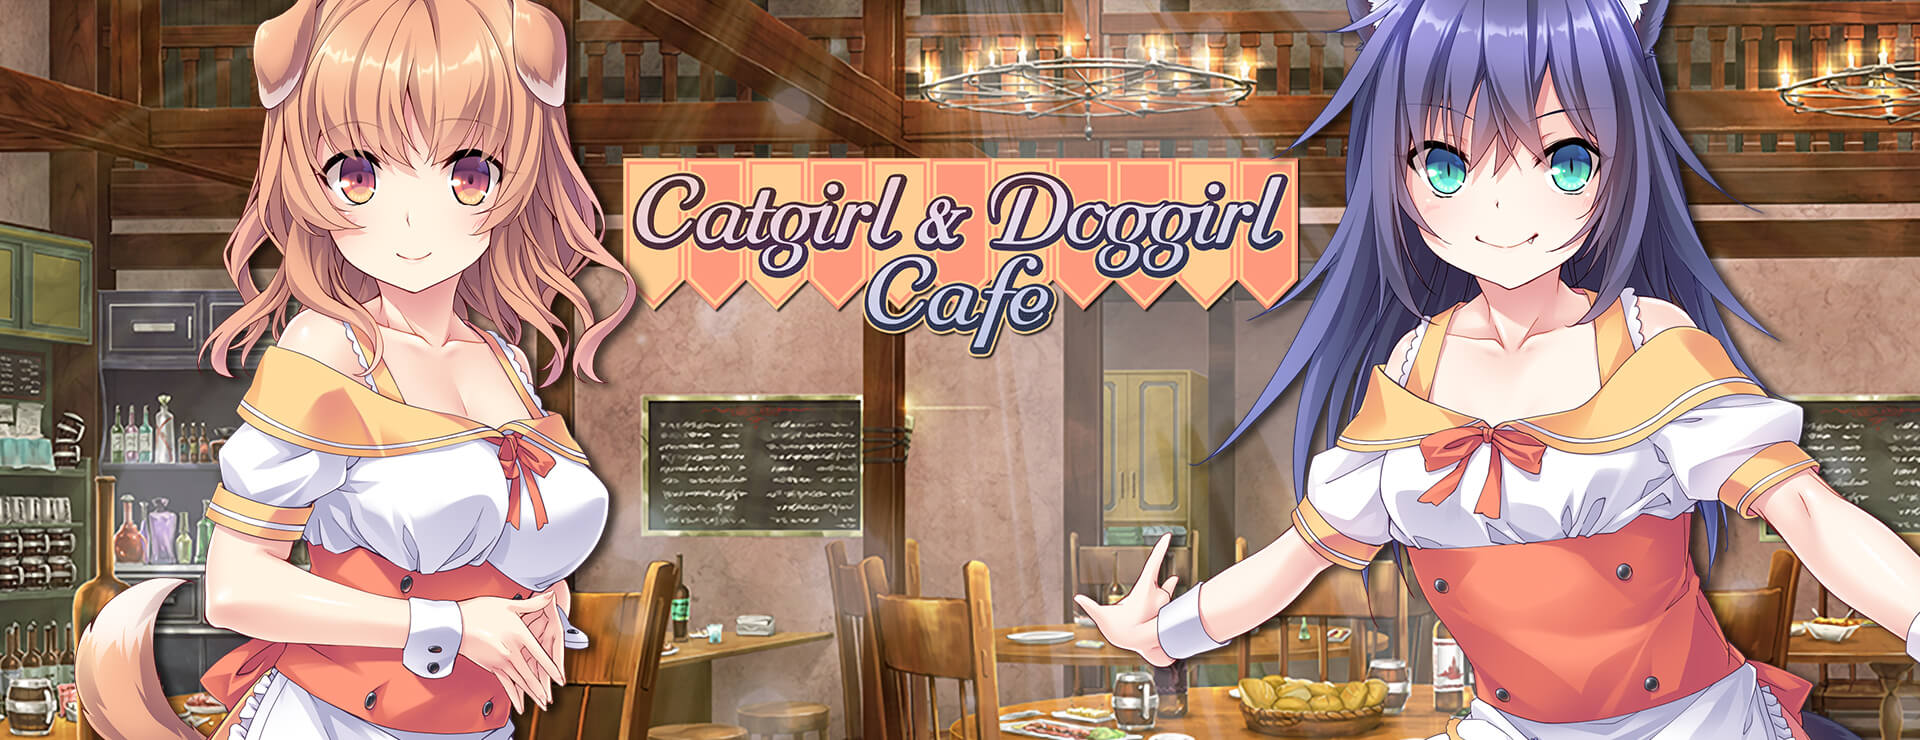 Catgirl and Doggirl Cafe - Powieść wizualna Gra